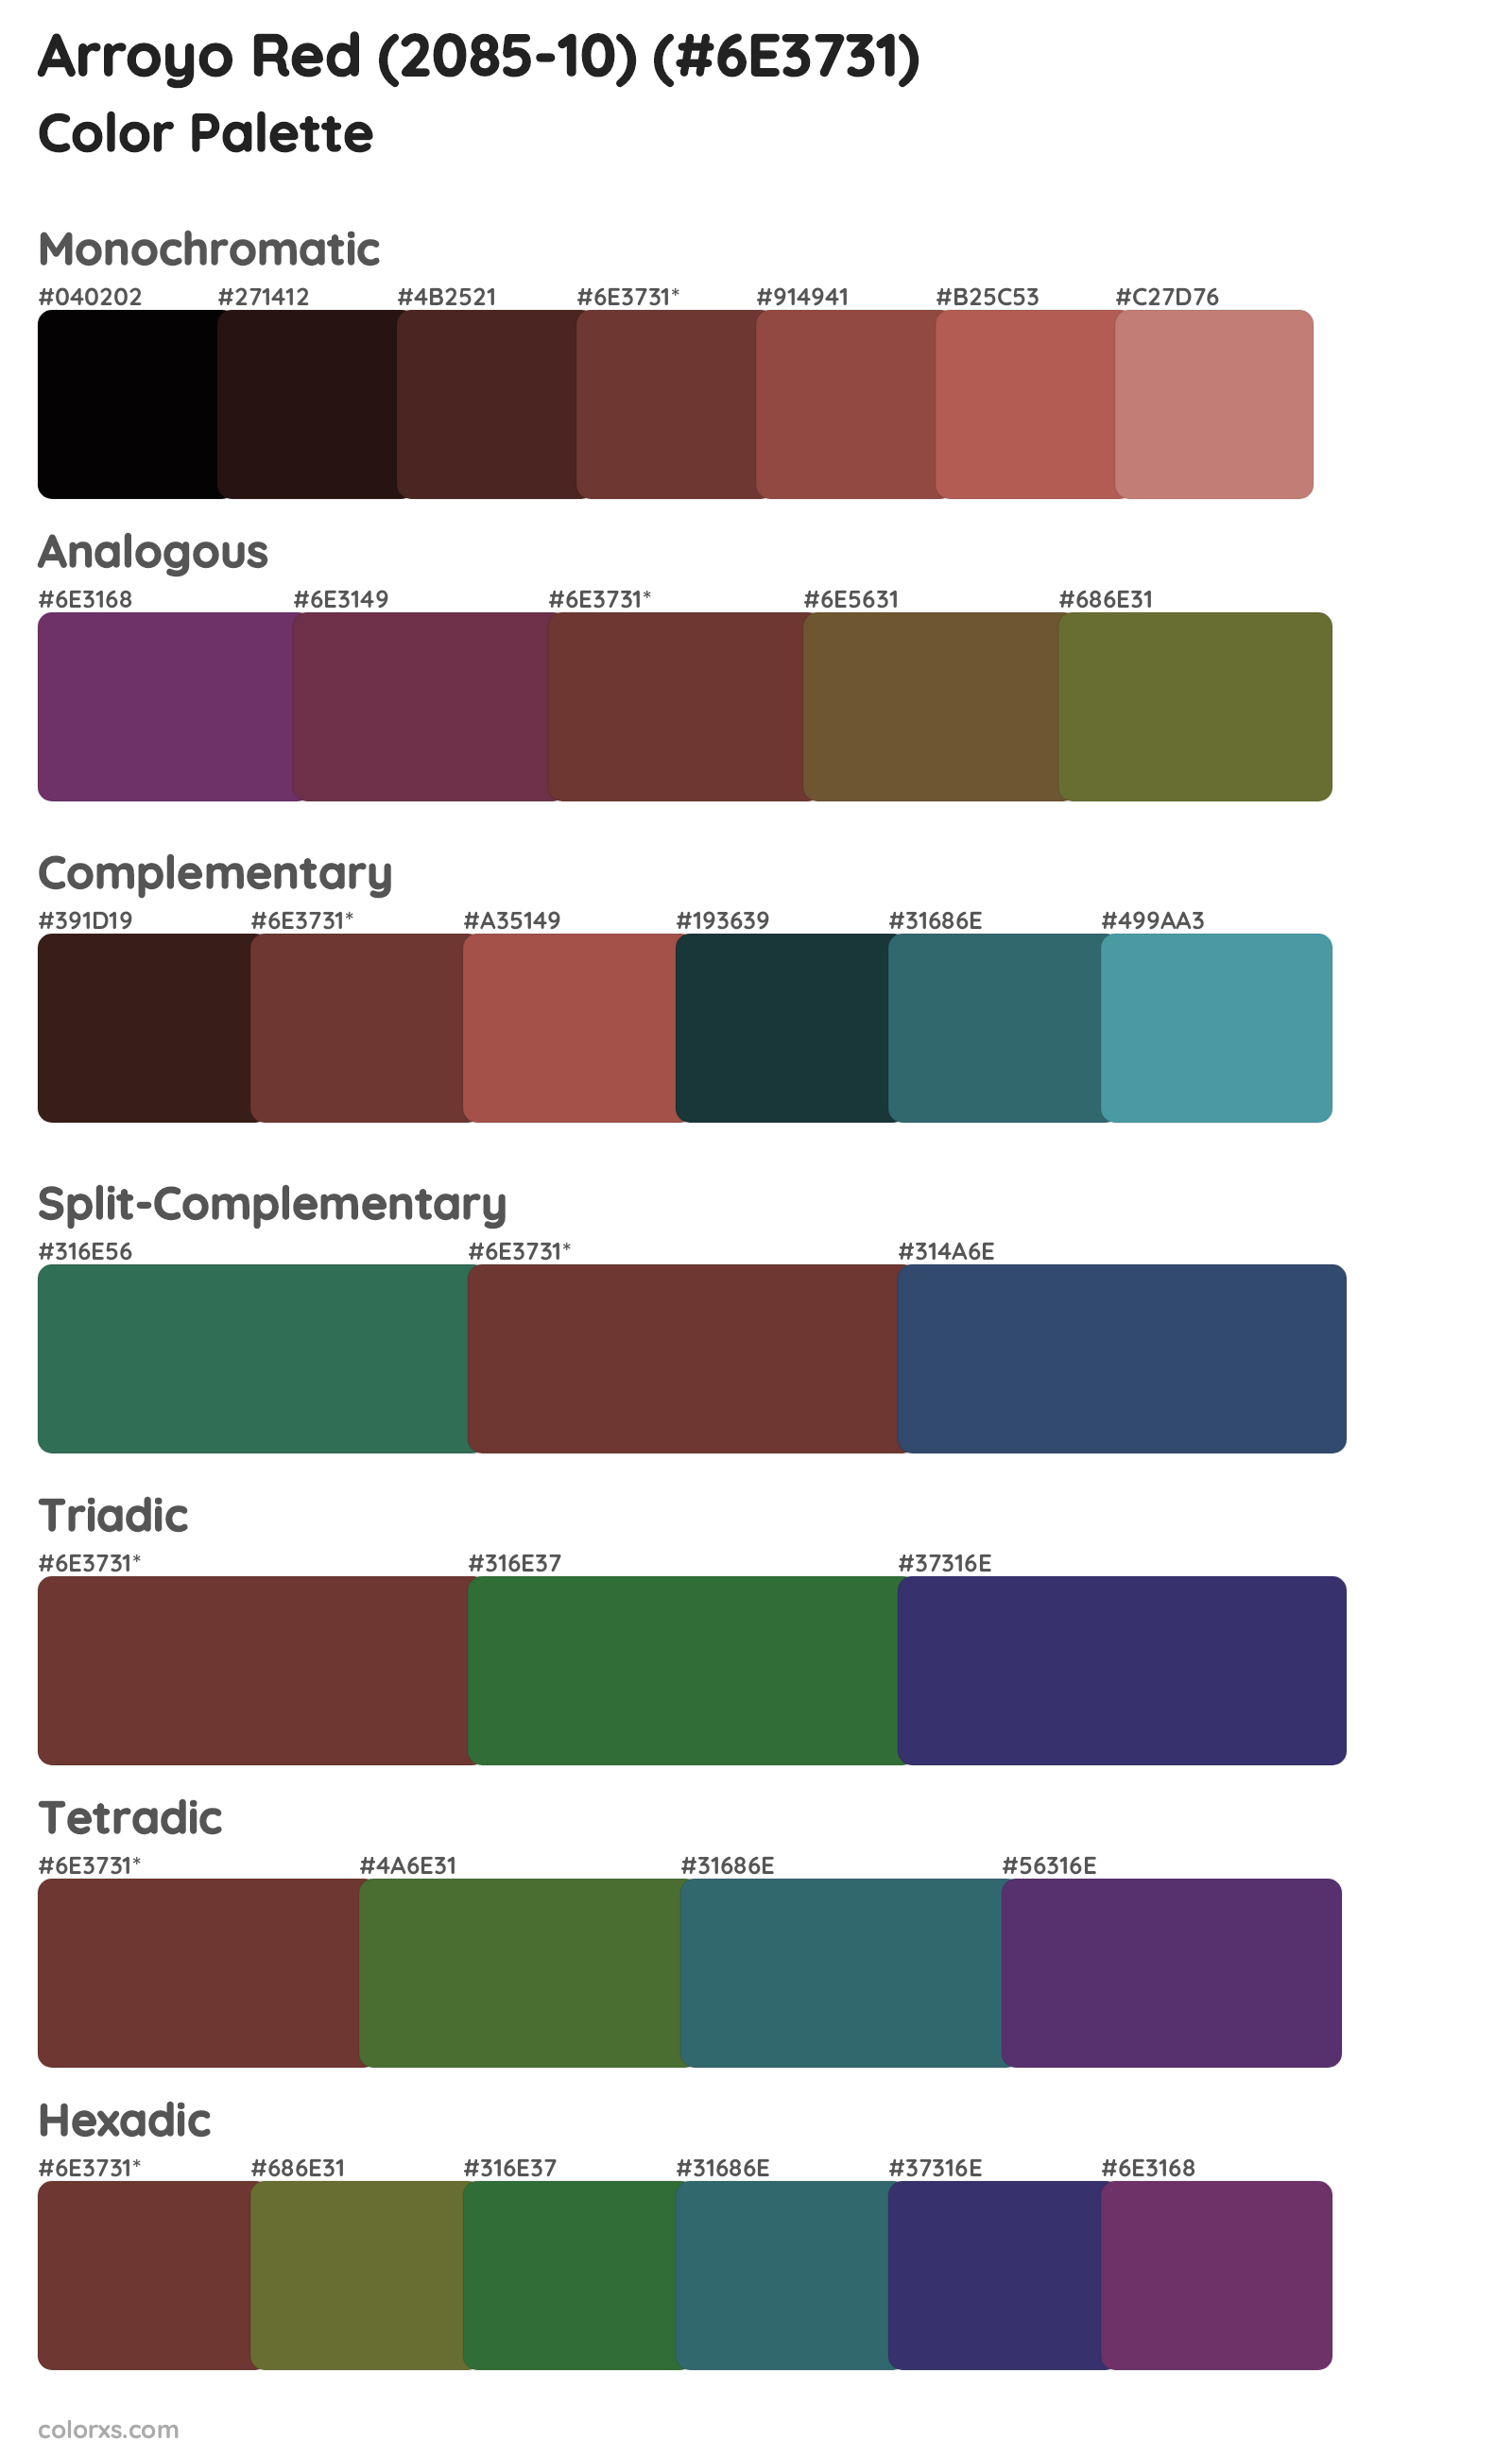 Arroyo Red (2085-10) Color Scheme Palettes